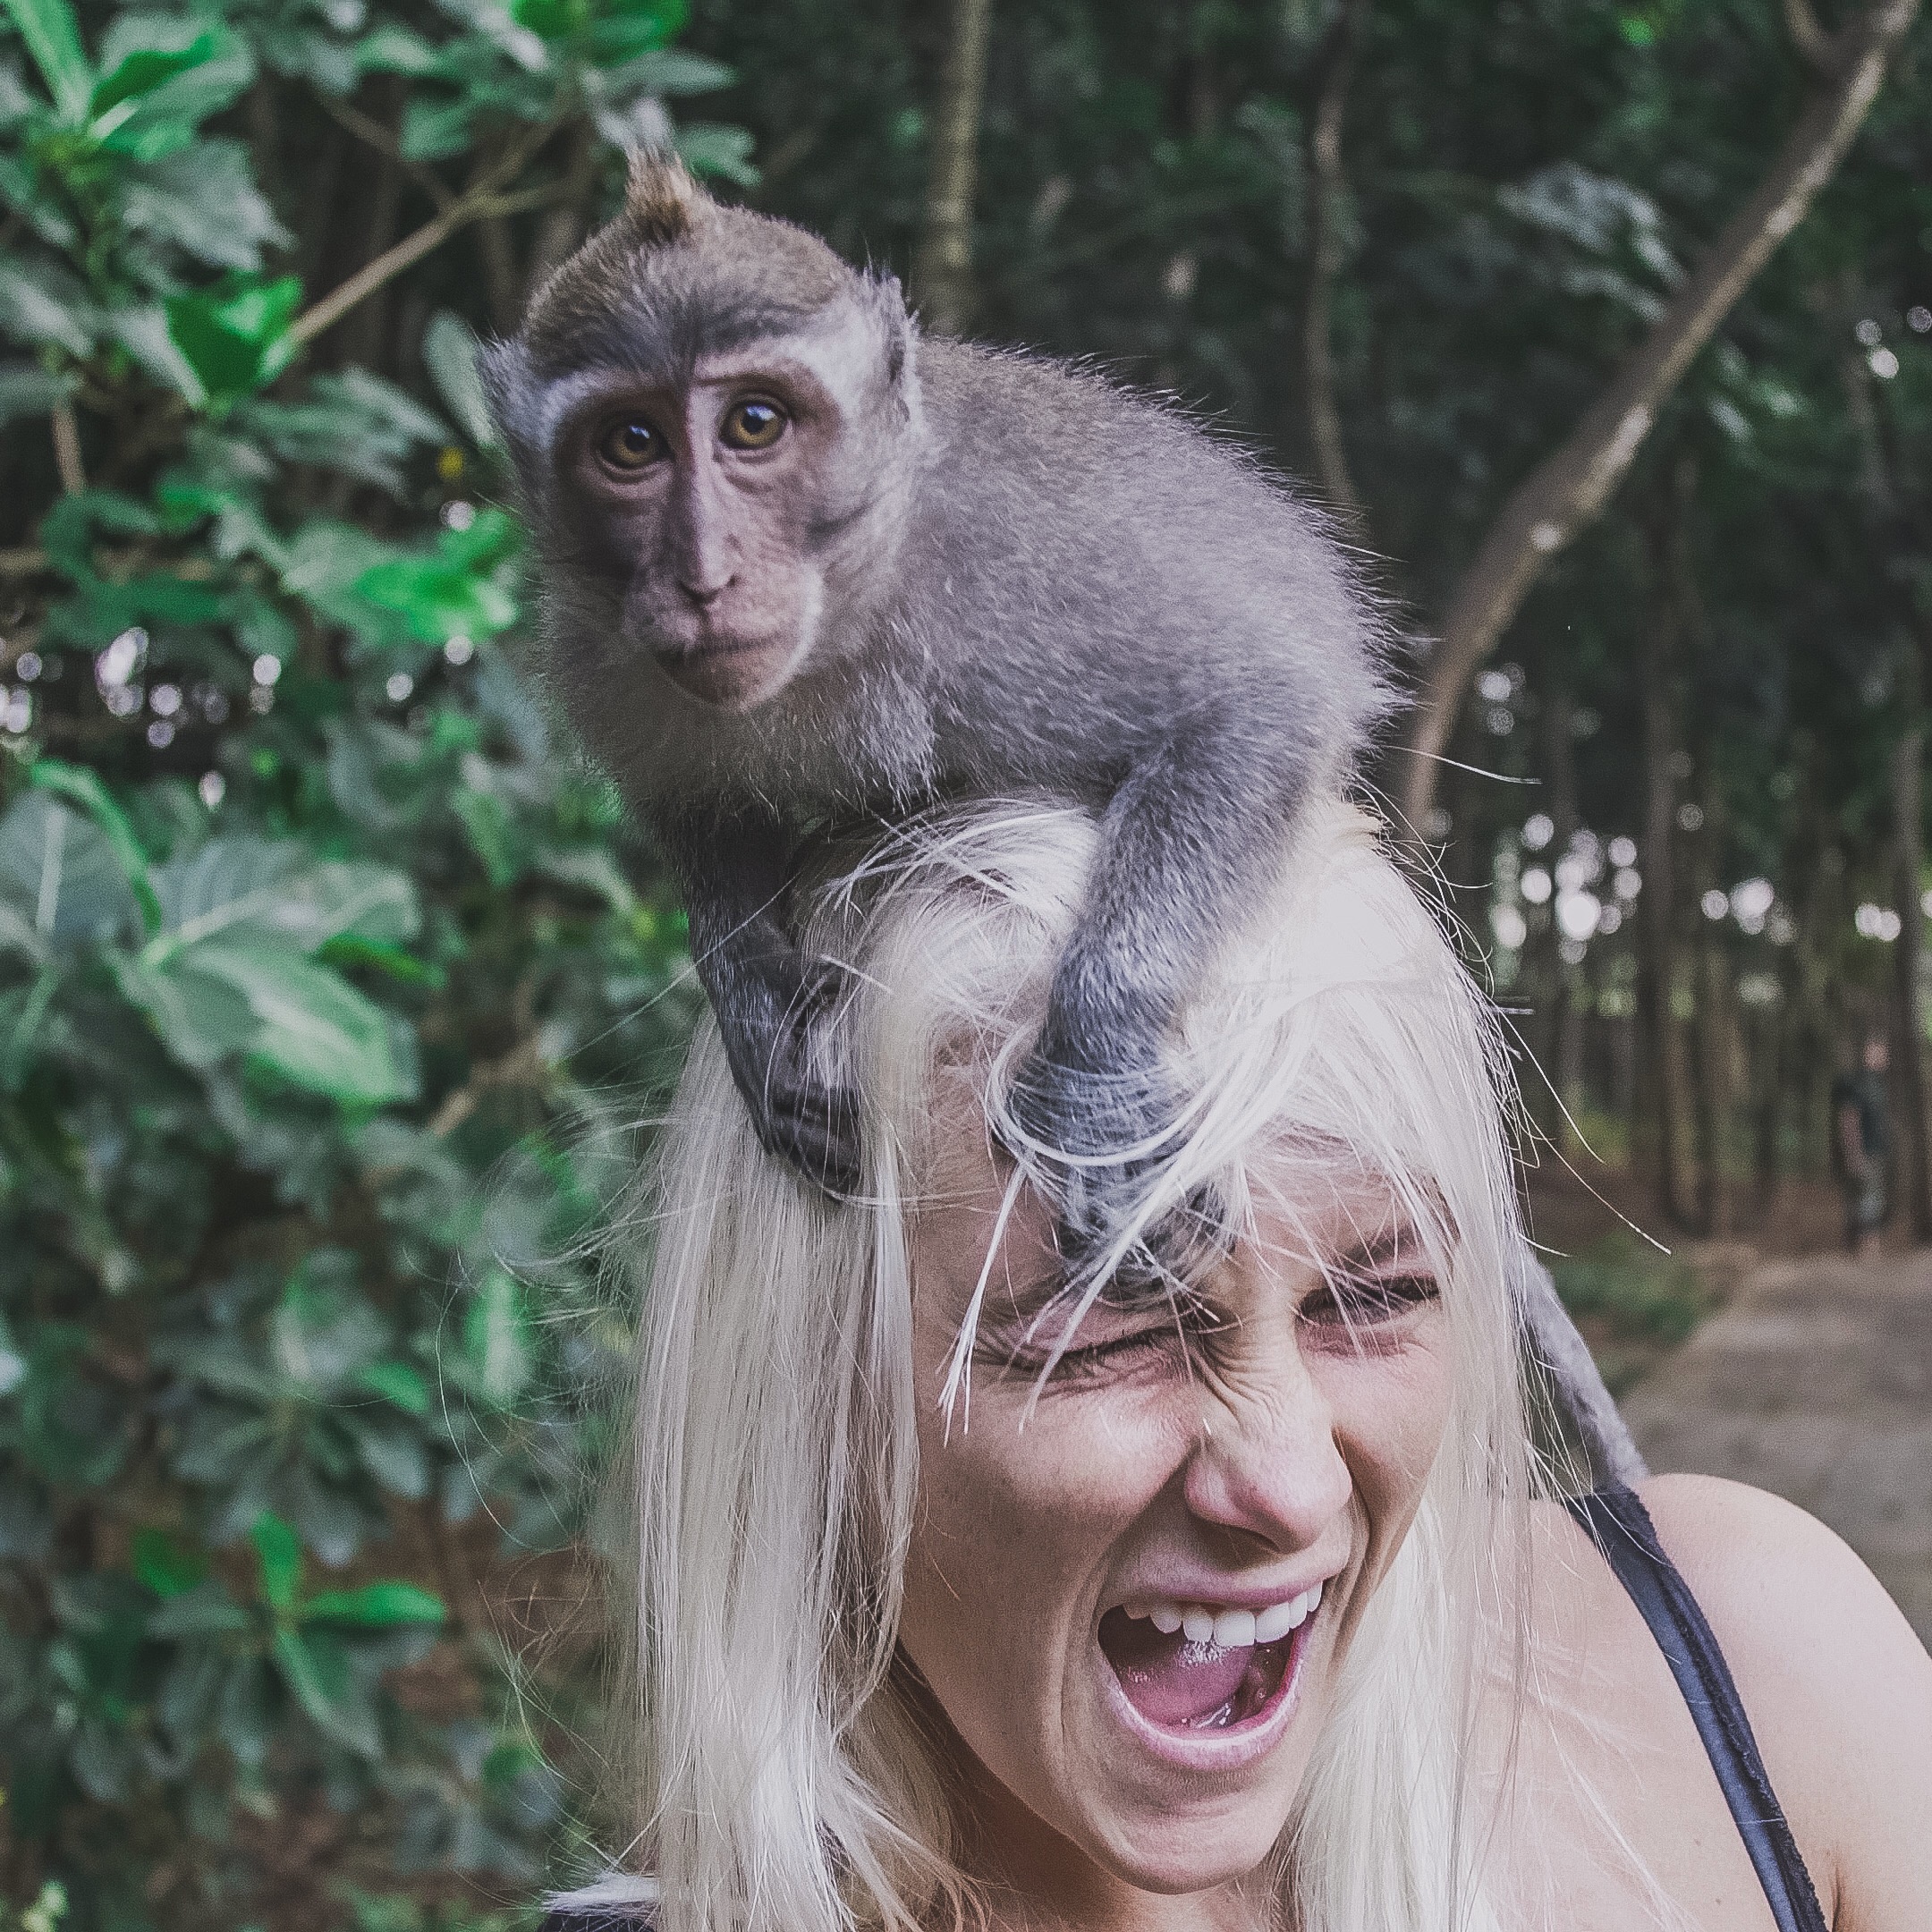 “Incrível e hilária”, define Callado sobre experiência com macacos.